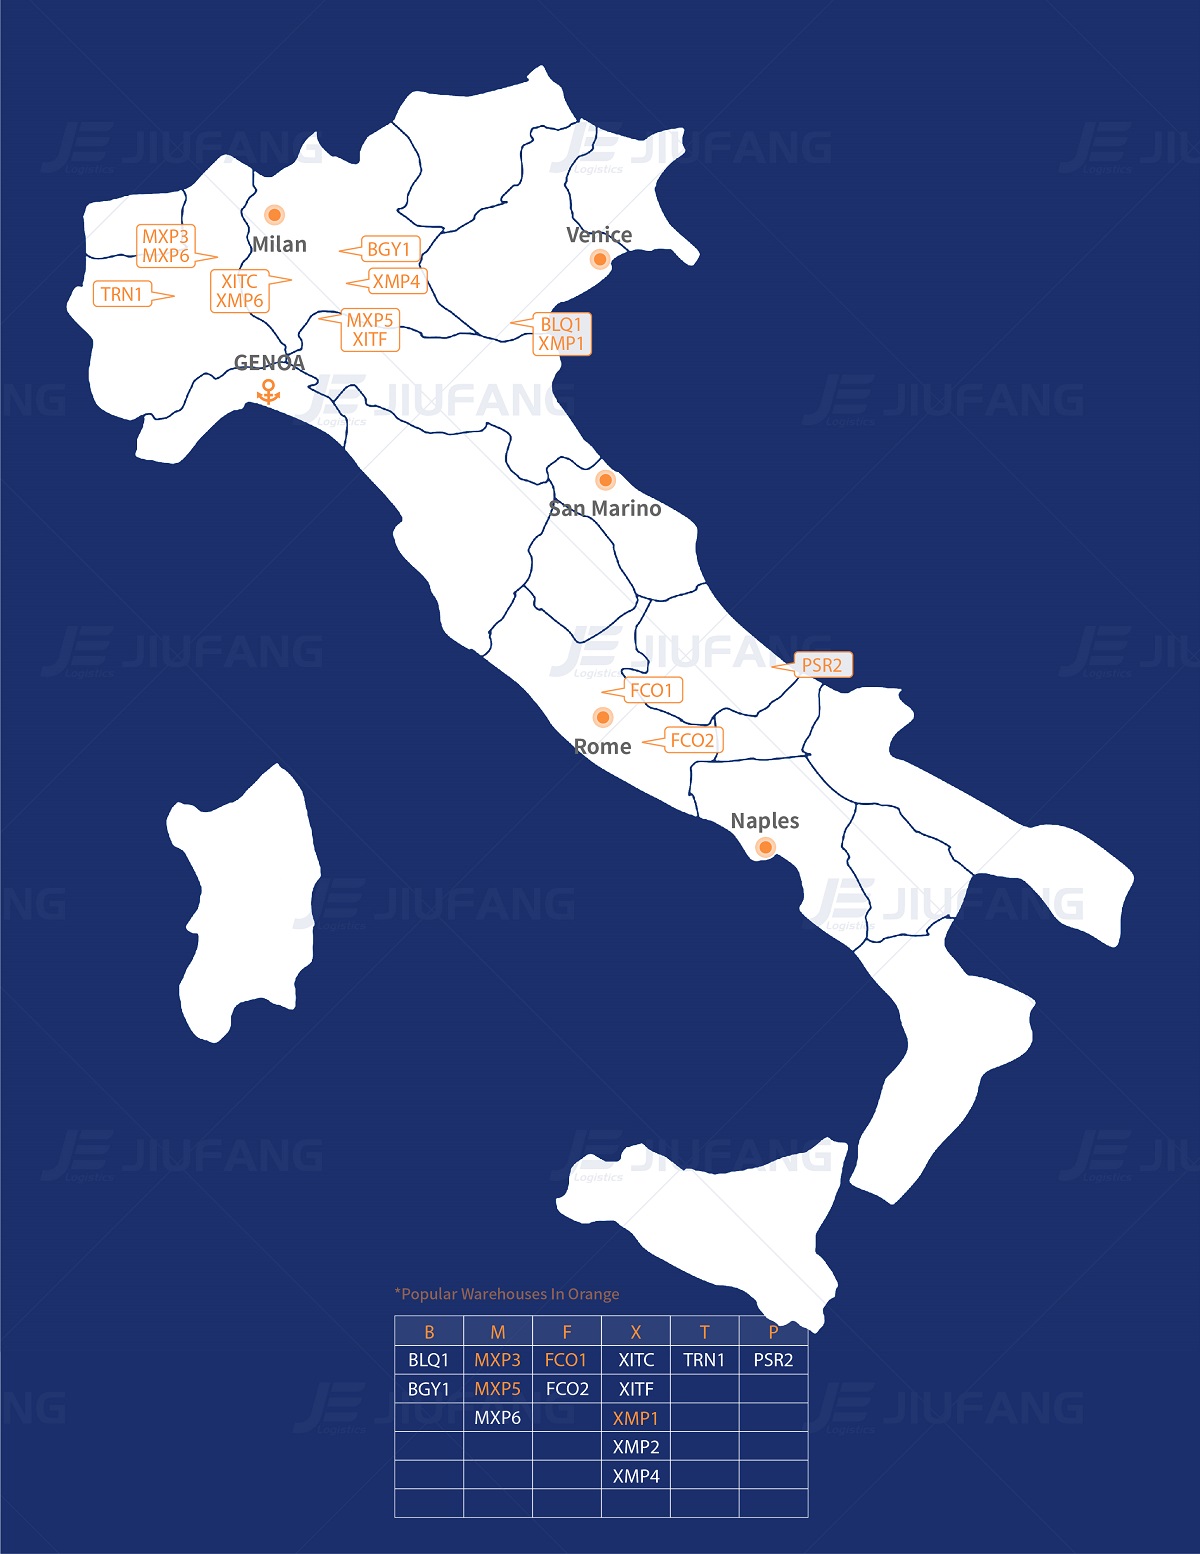 Italy Amazon warehouse map